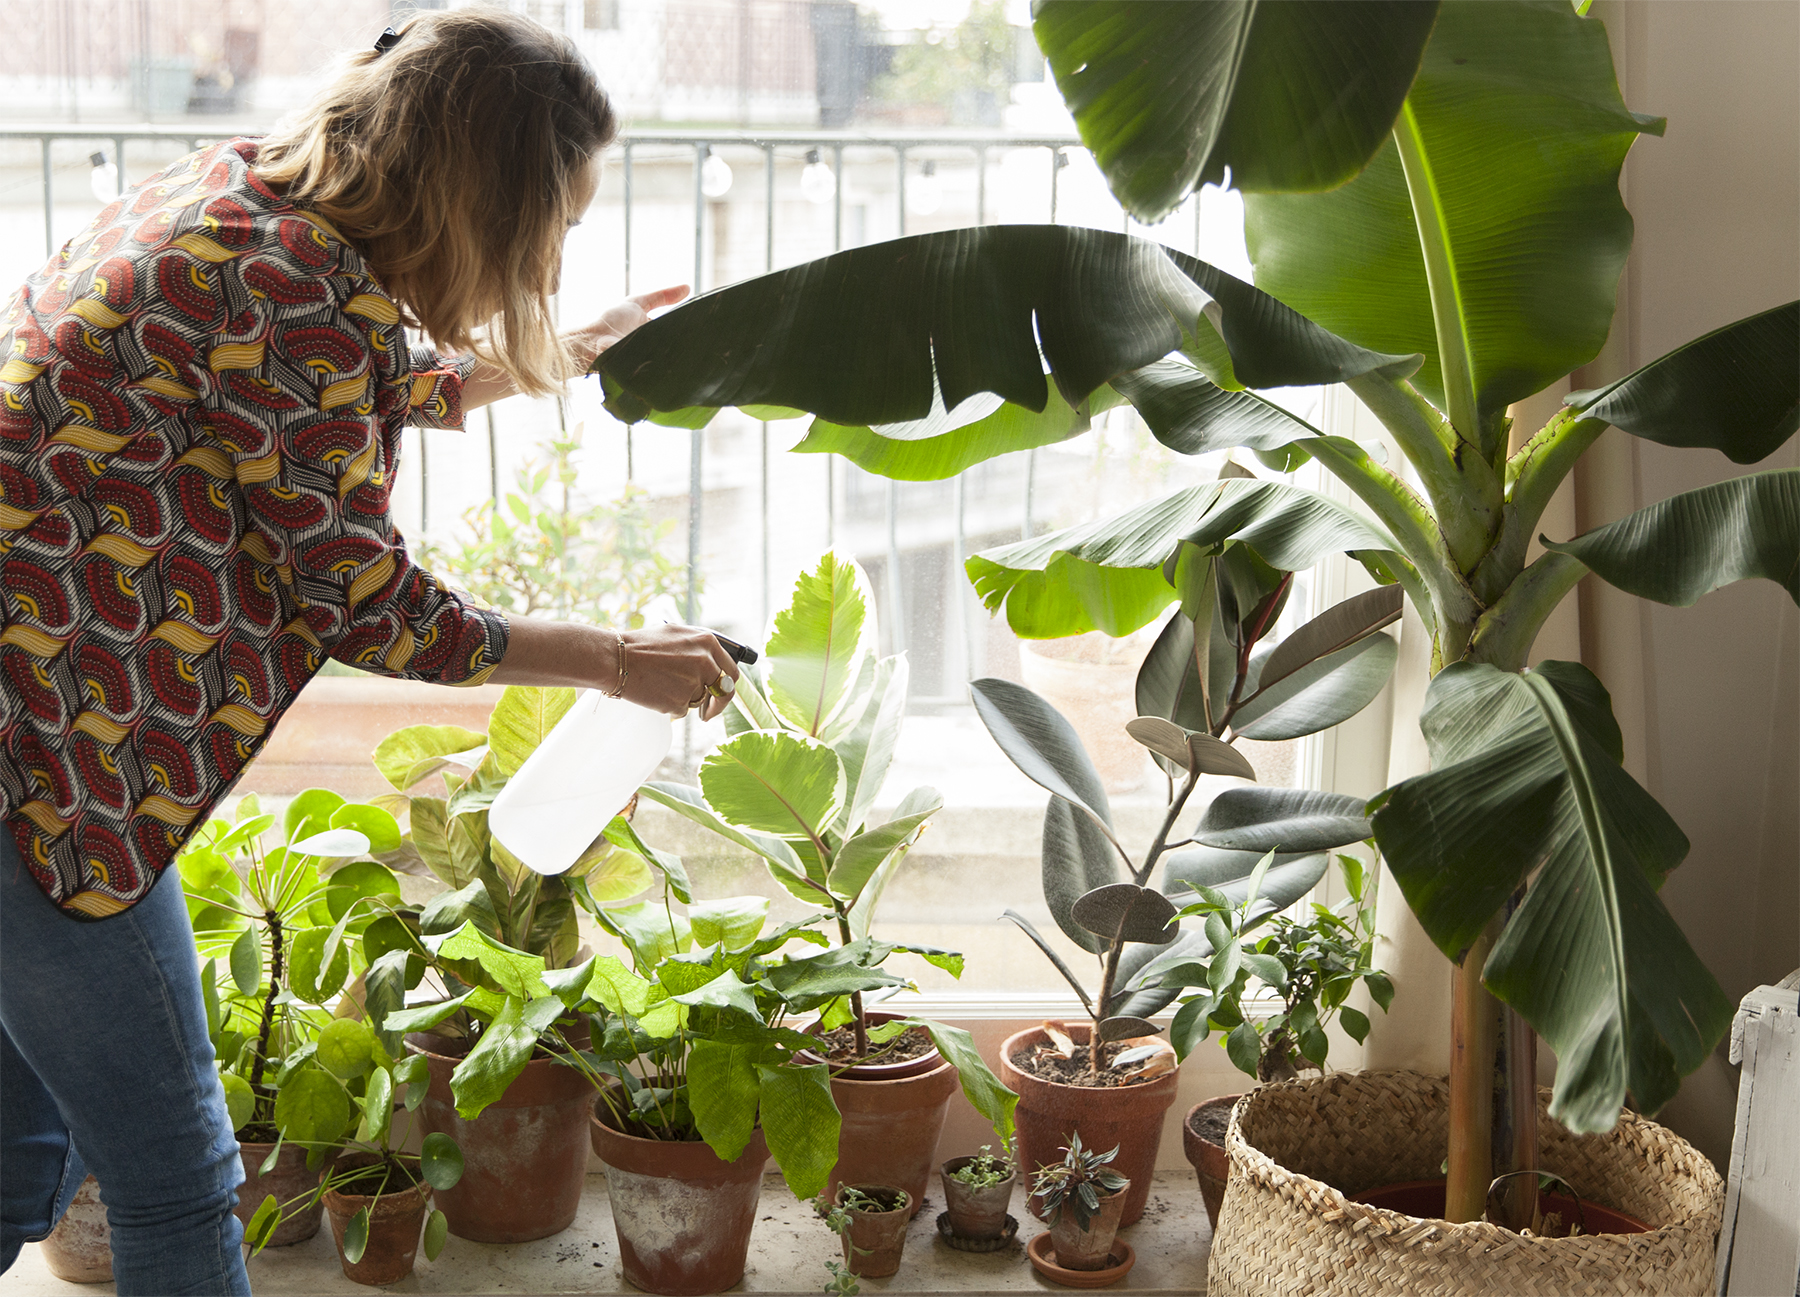 11 plantes descontaminants que depuren l'aire de casa teva (sense manteniment).